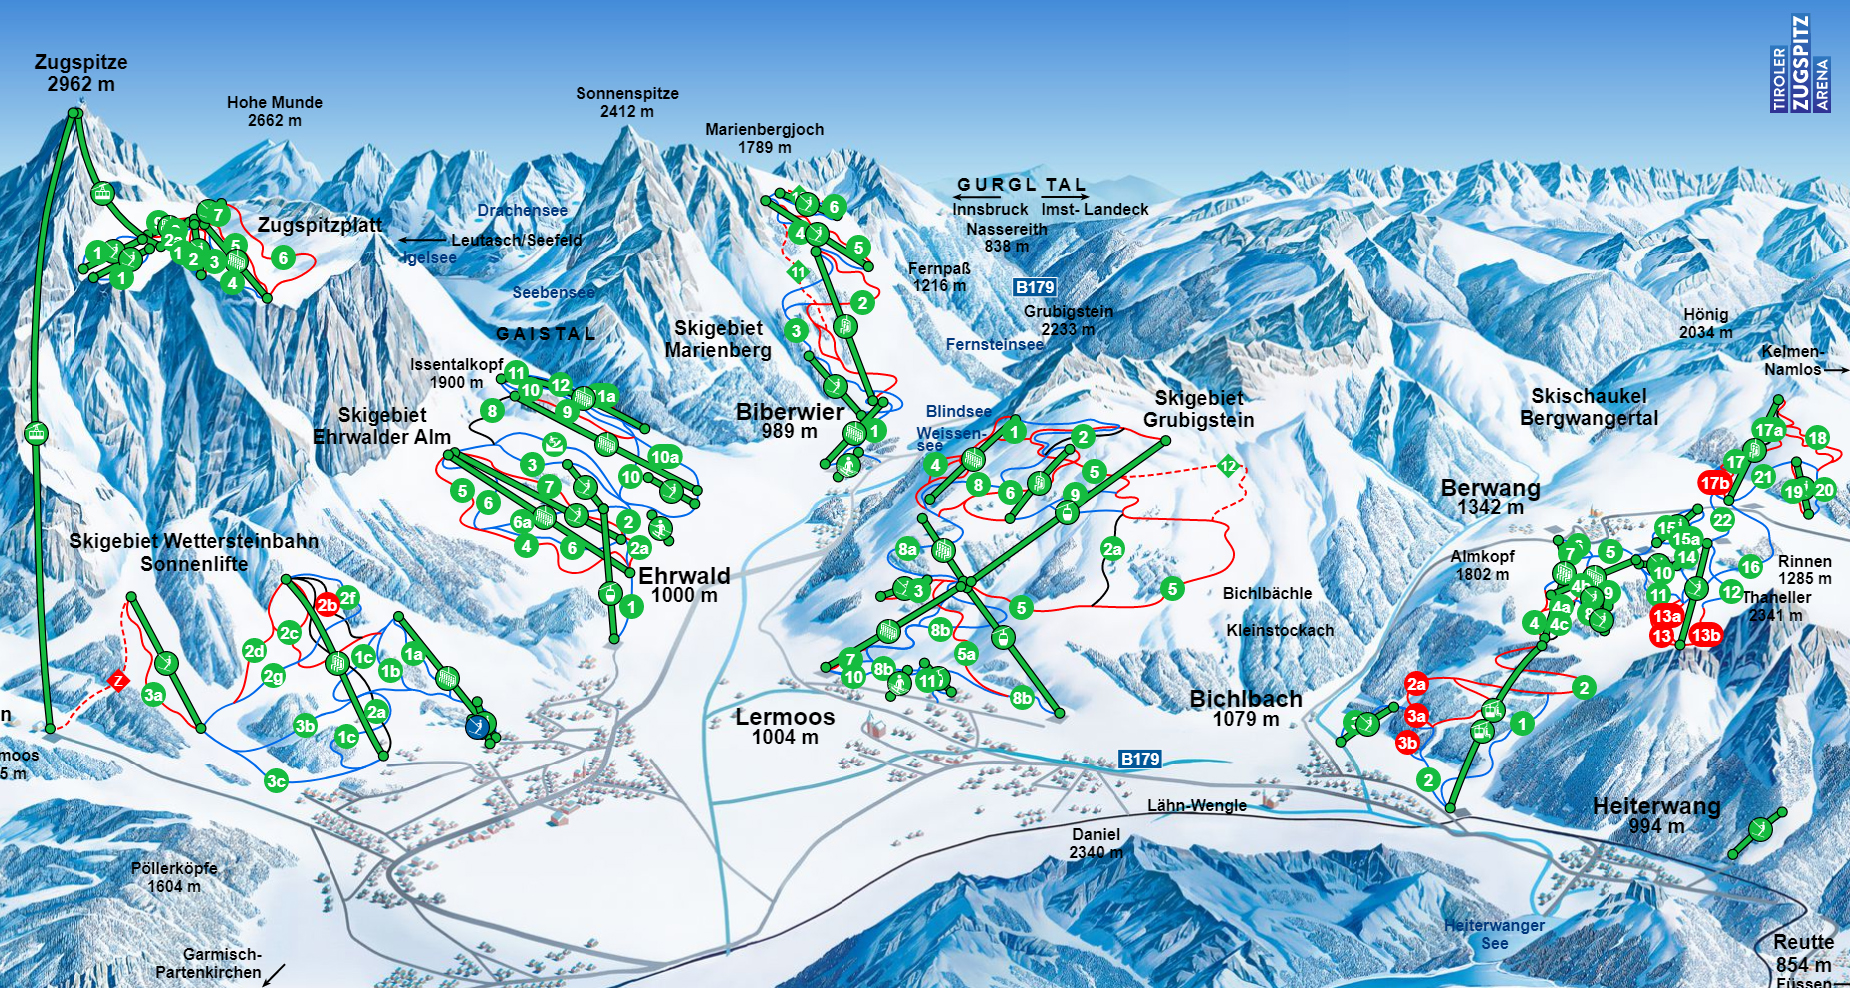 Austria Attew Painting Landscape art kunst ski skifahren skilaufen snowboard mountain berg alp Snow schnee vinter